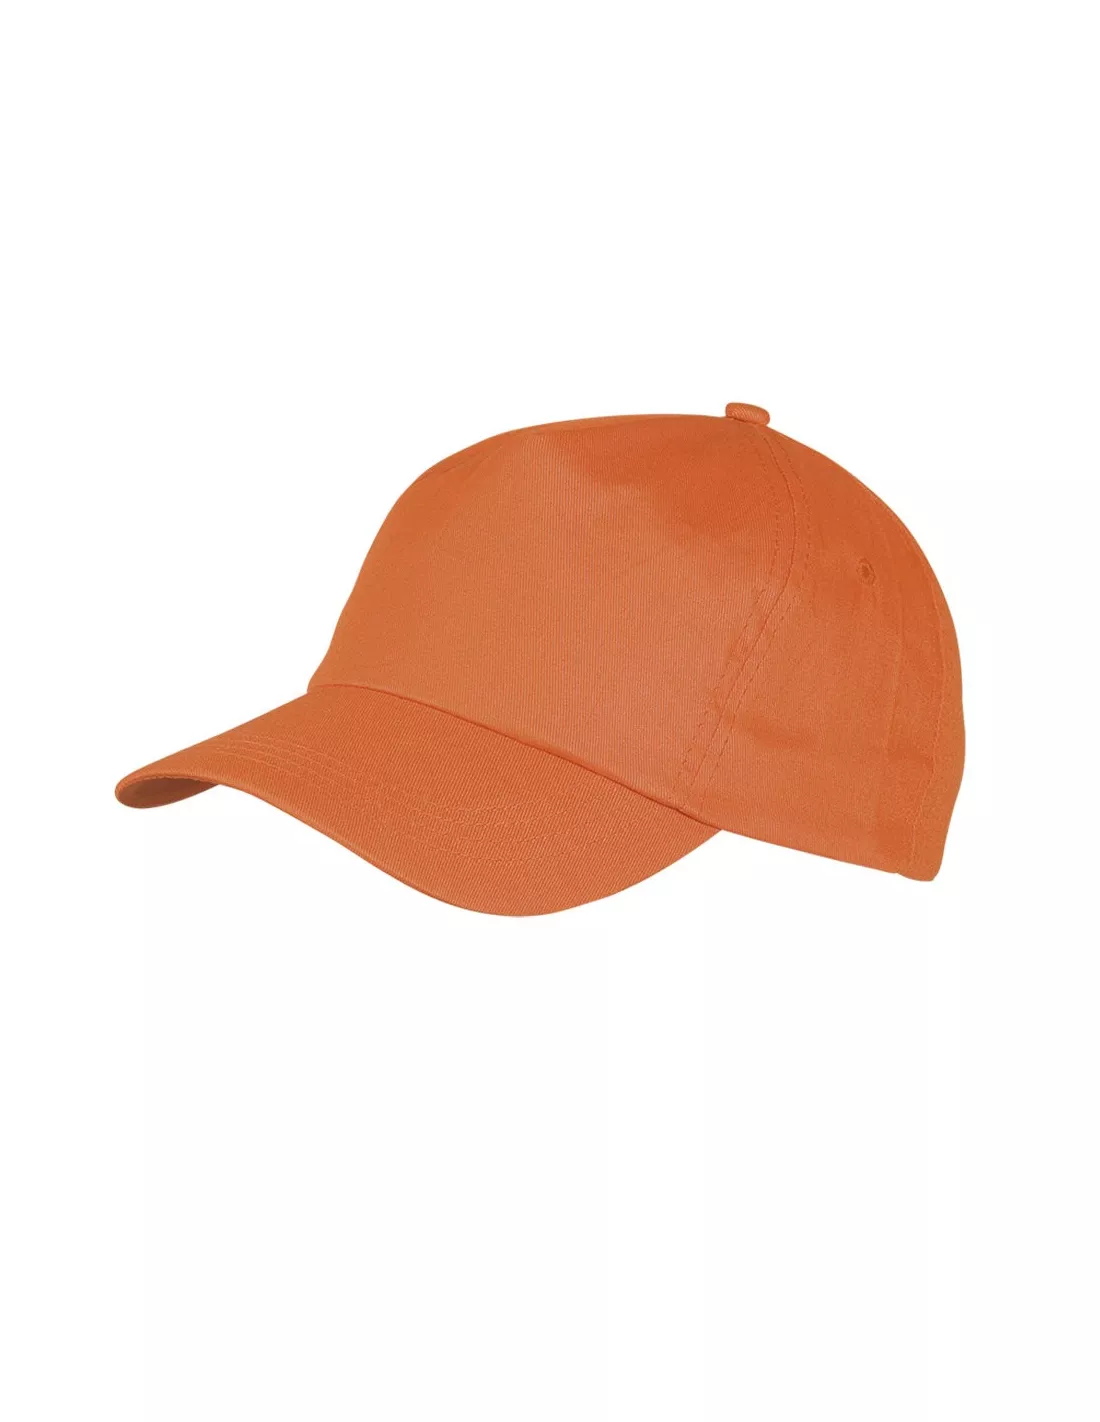 gorras deportivas personalizadas en sevilla